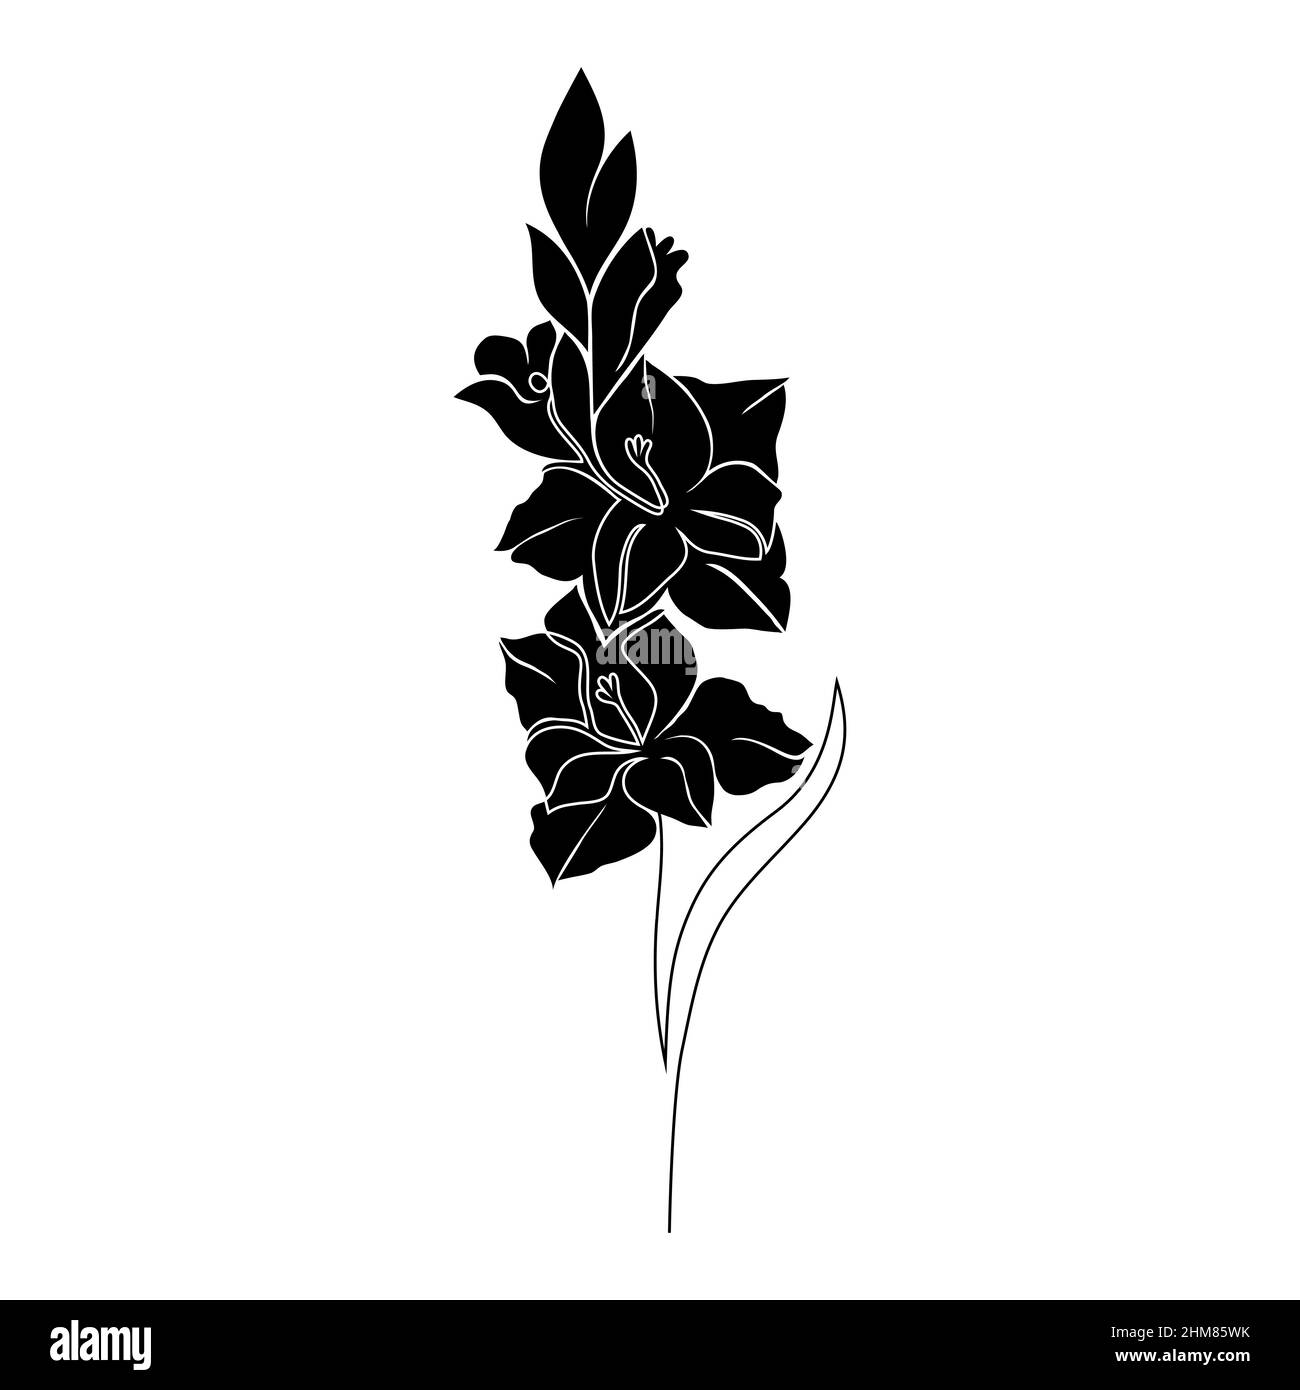 Download Minimalist Gladiolus Flower Tattoo Wallpaper | Wallpapers.com